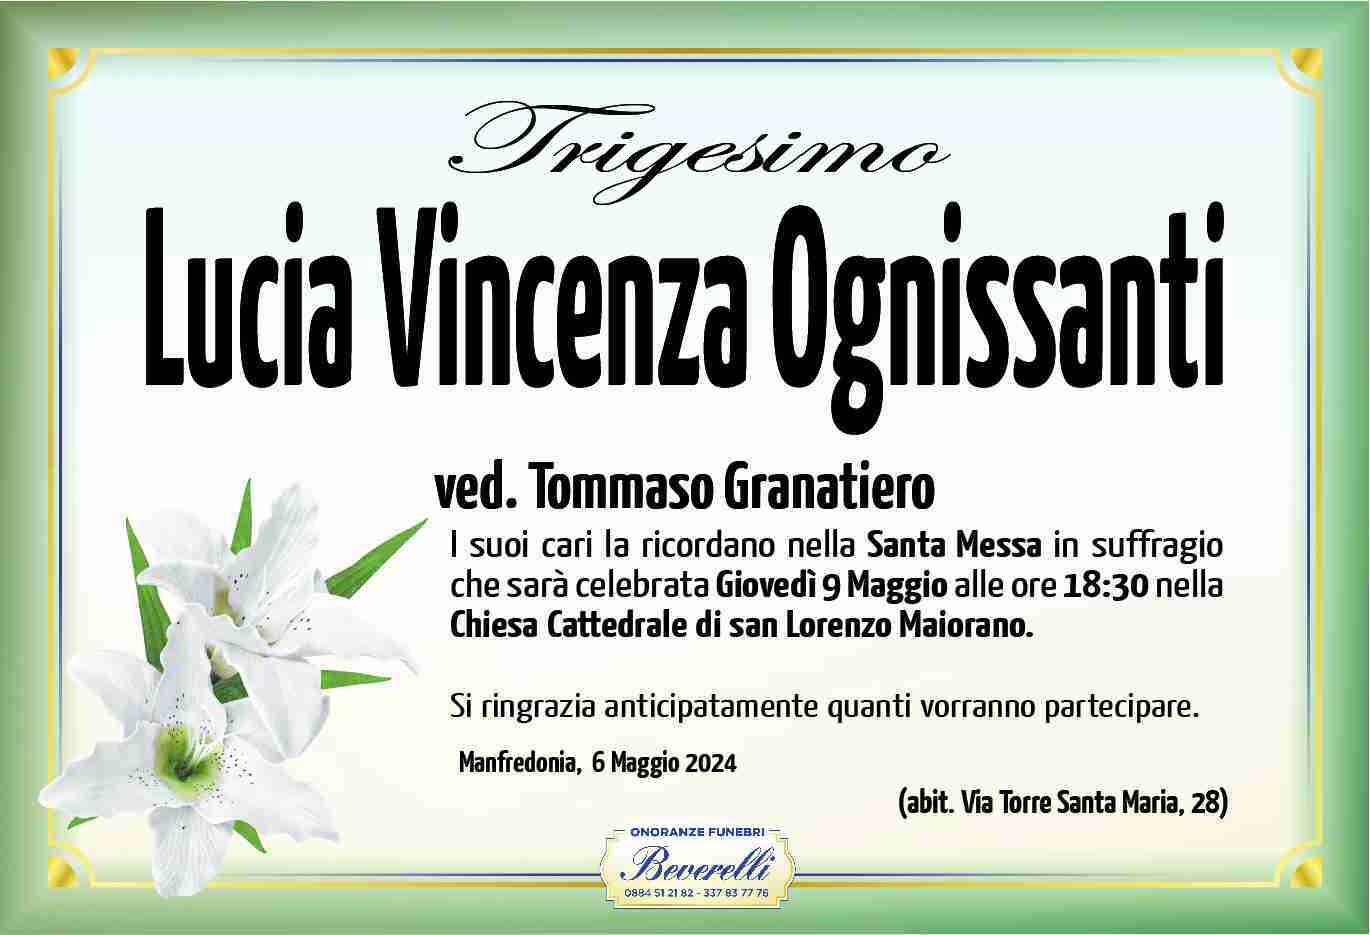 Lucia Vincenza Ognissanti